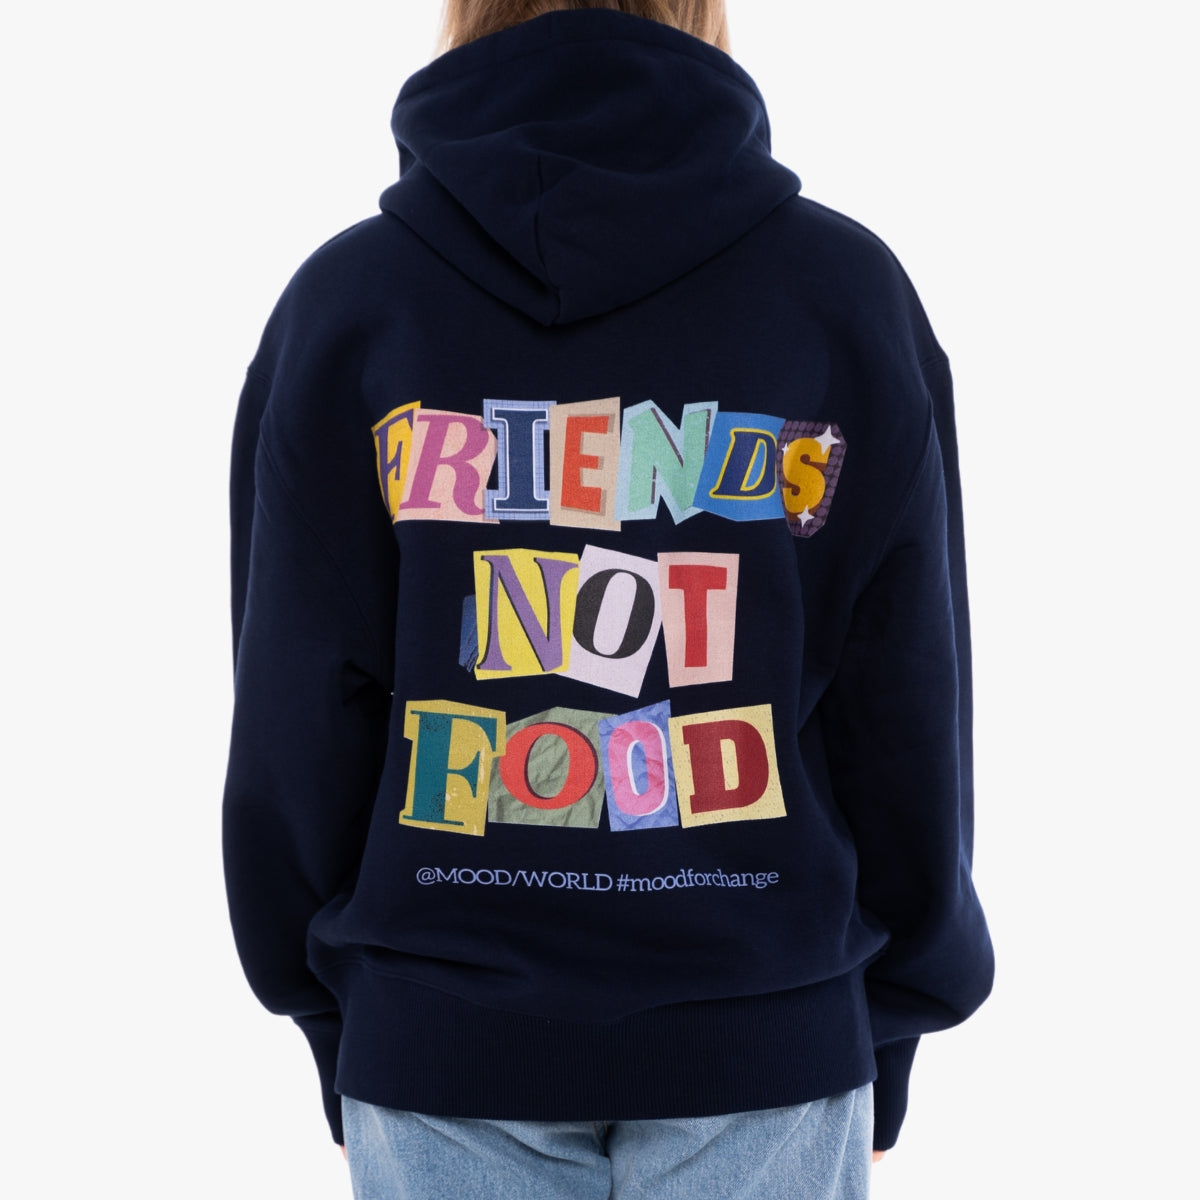 'FRIENDS NOT FOOD Letters' Organic Oversize Hoodie in der Farbe French Navy als Back Nahaufnahme Detail getragen von einem weiblichem Model